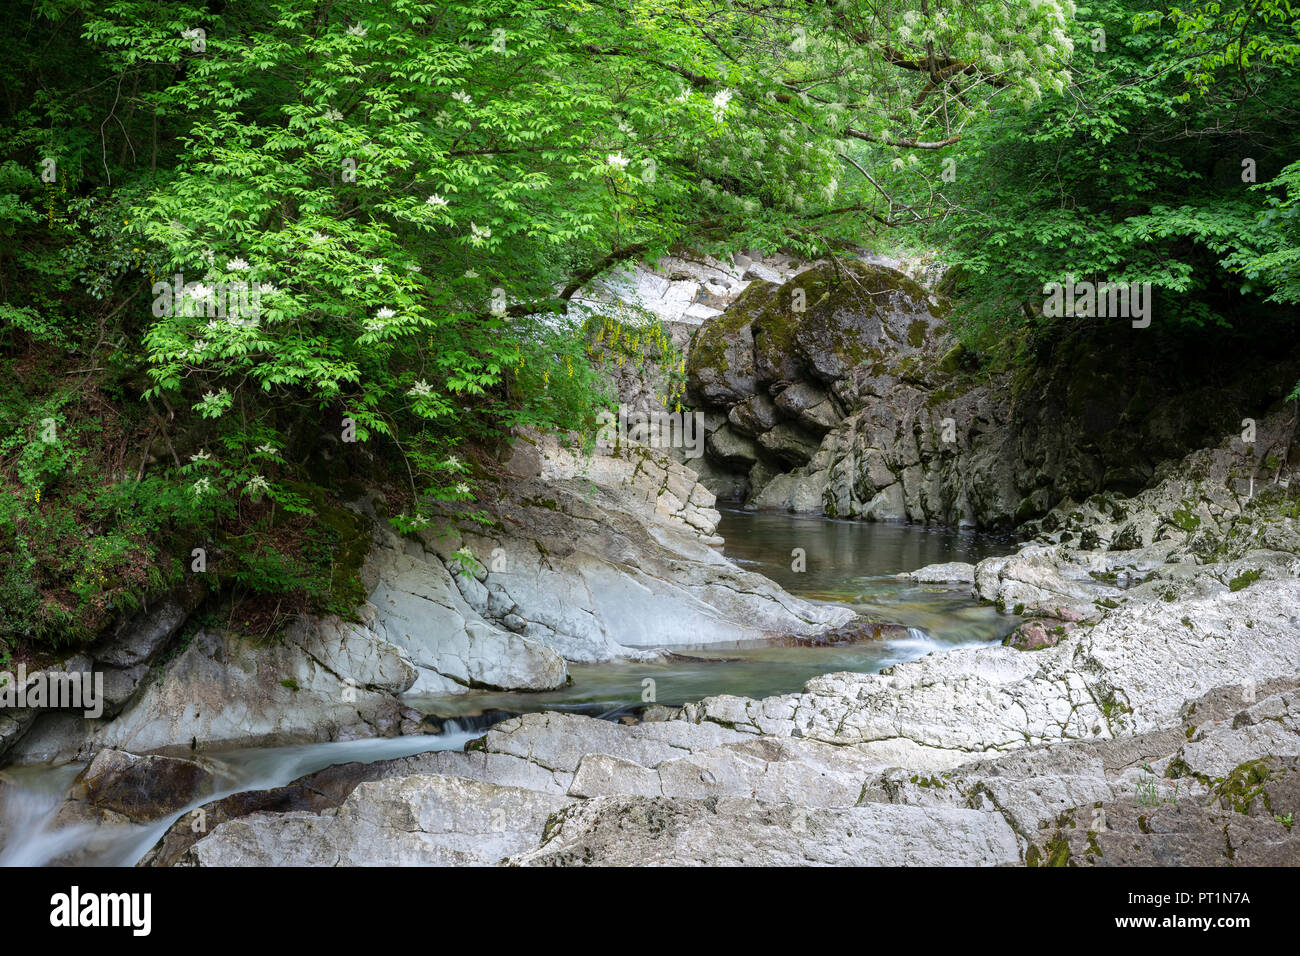 Waterfalls of the river Breggia at Breggia gorges, Muggio Valley, Mendrisio District, Canton Ticino, Switzerland, Stock Photo